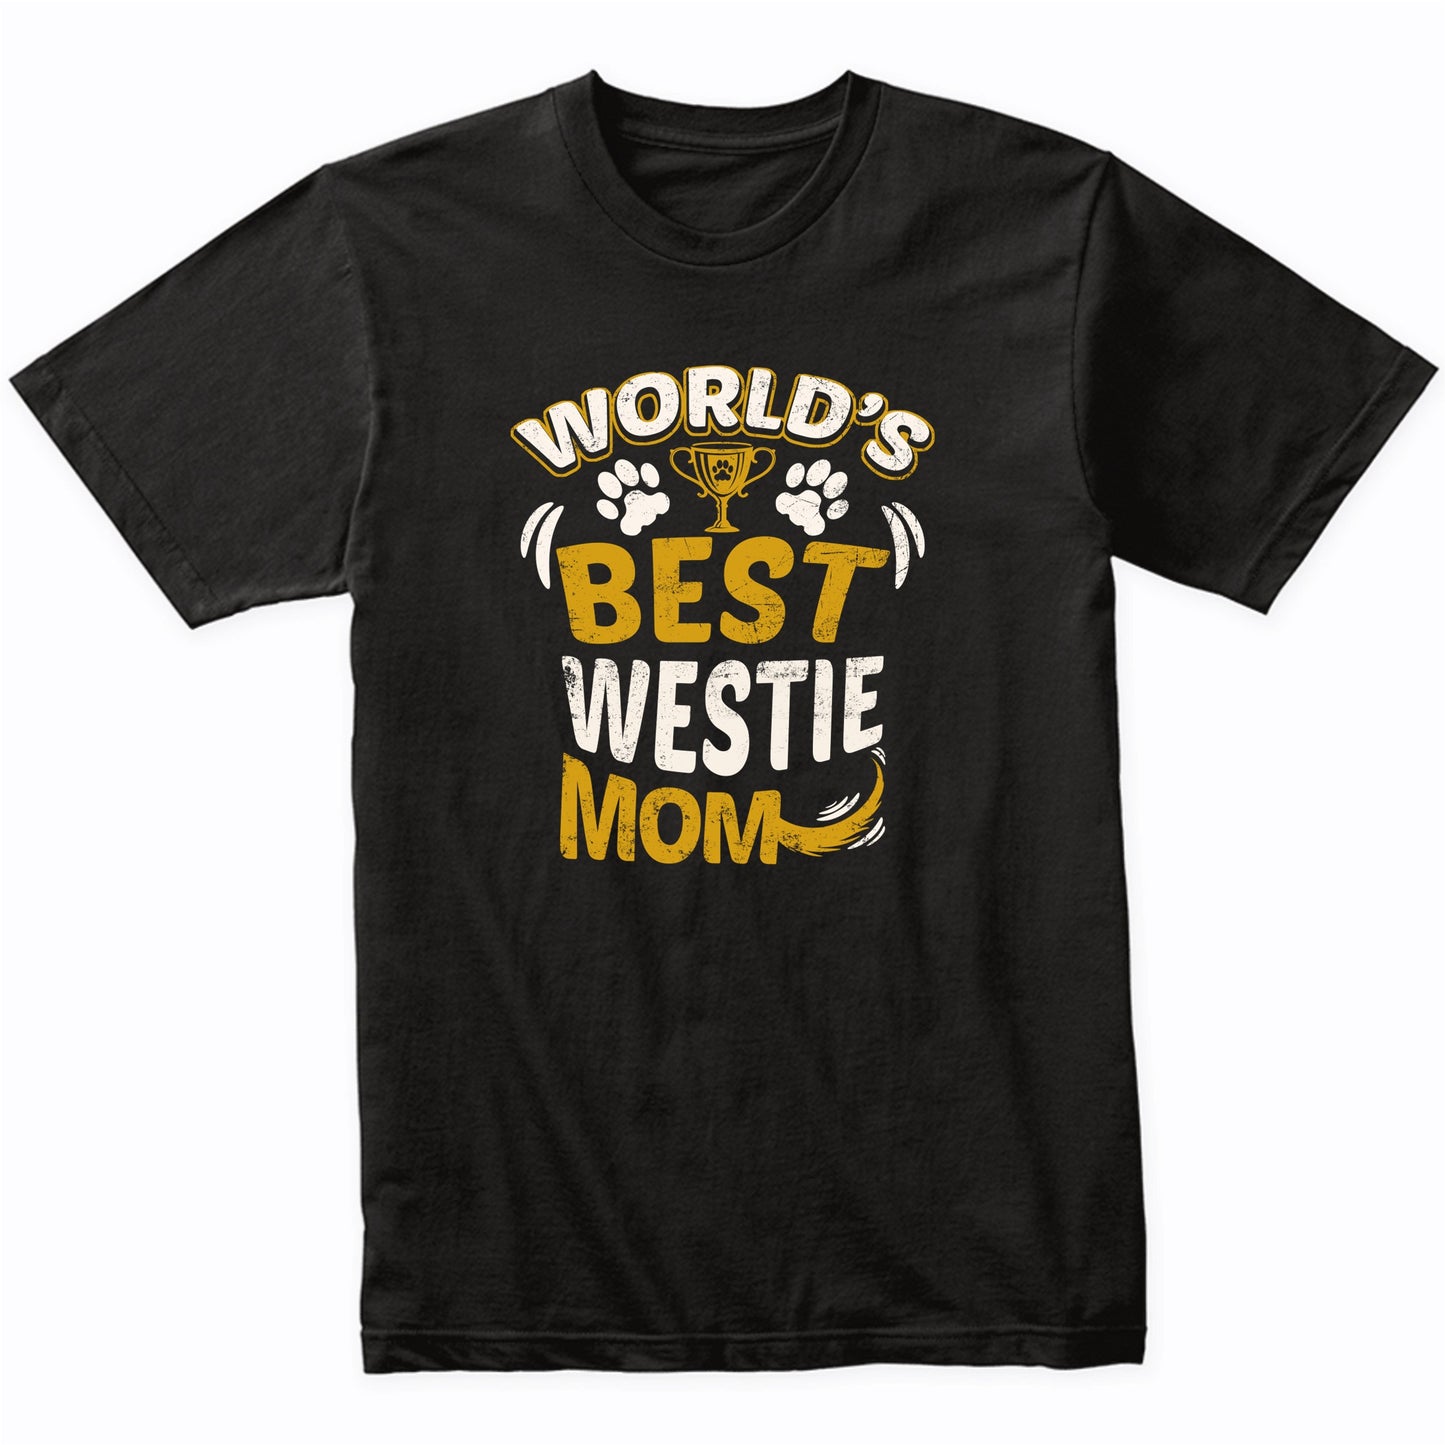 World's Best Westie Mom Graphic T-Shirt